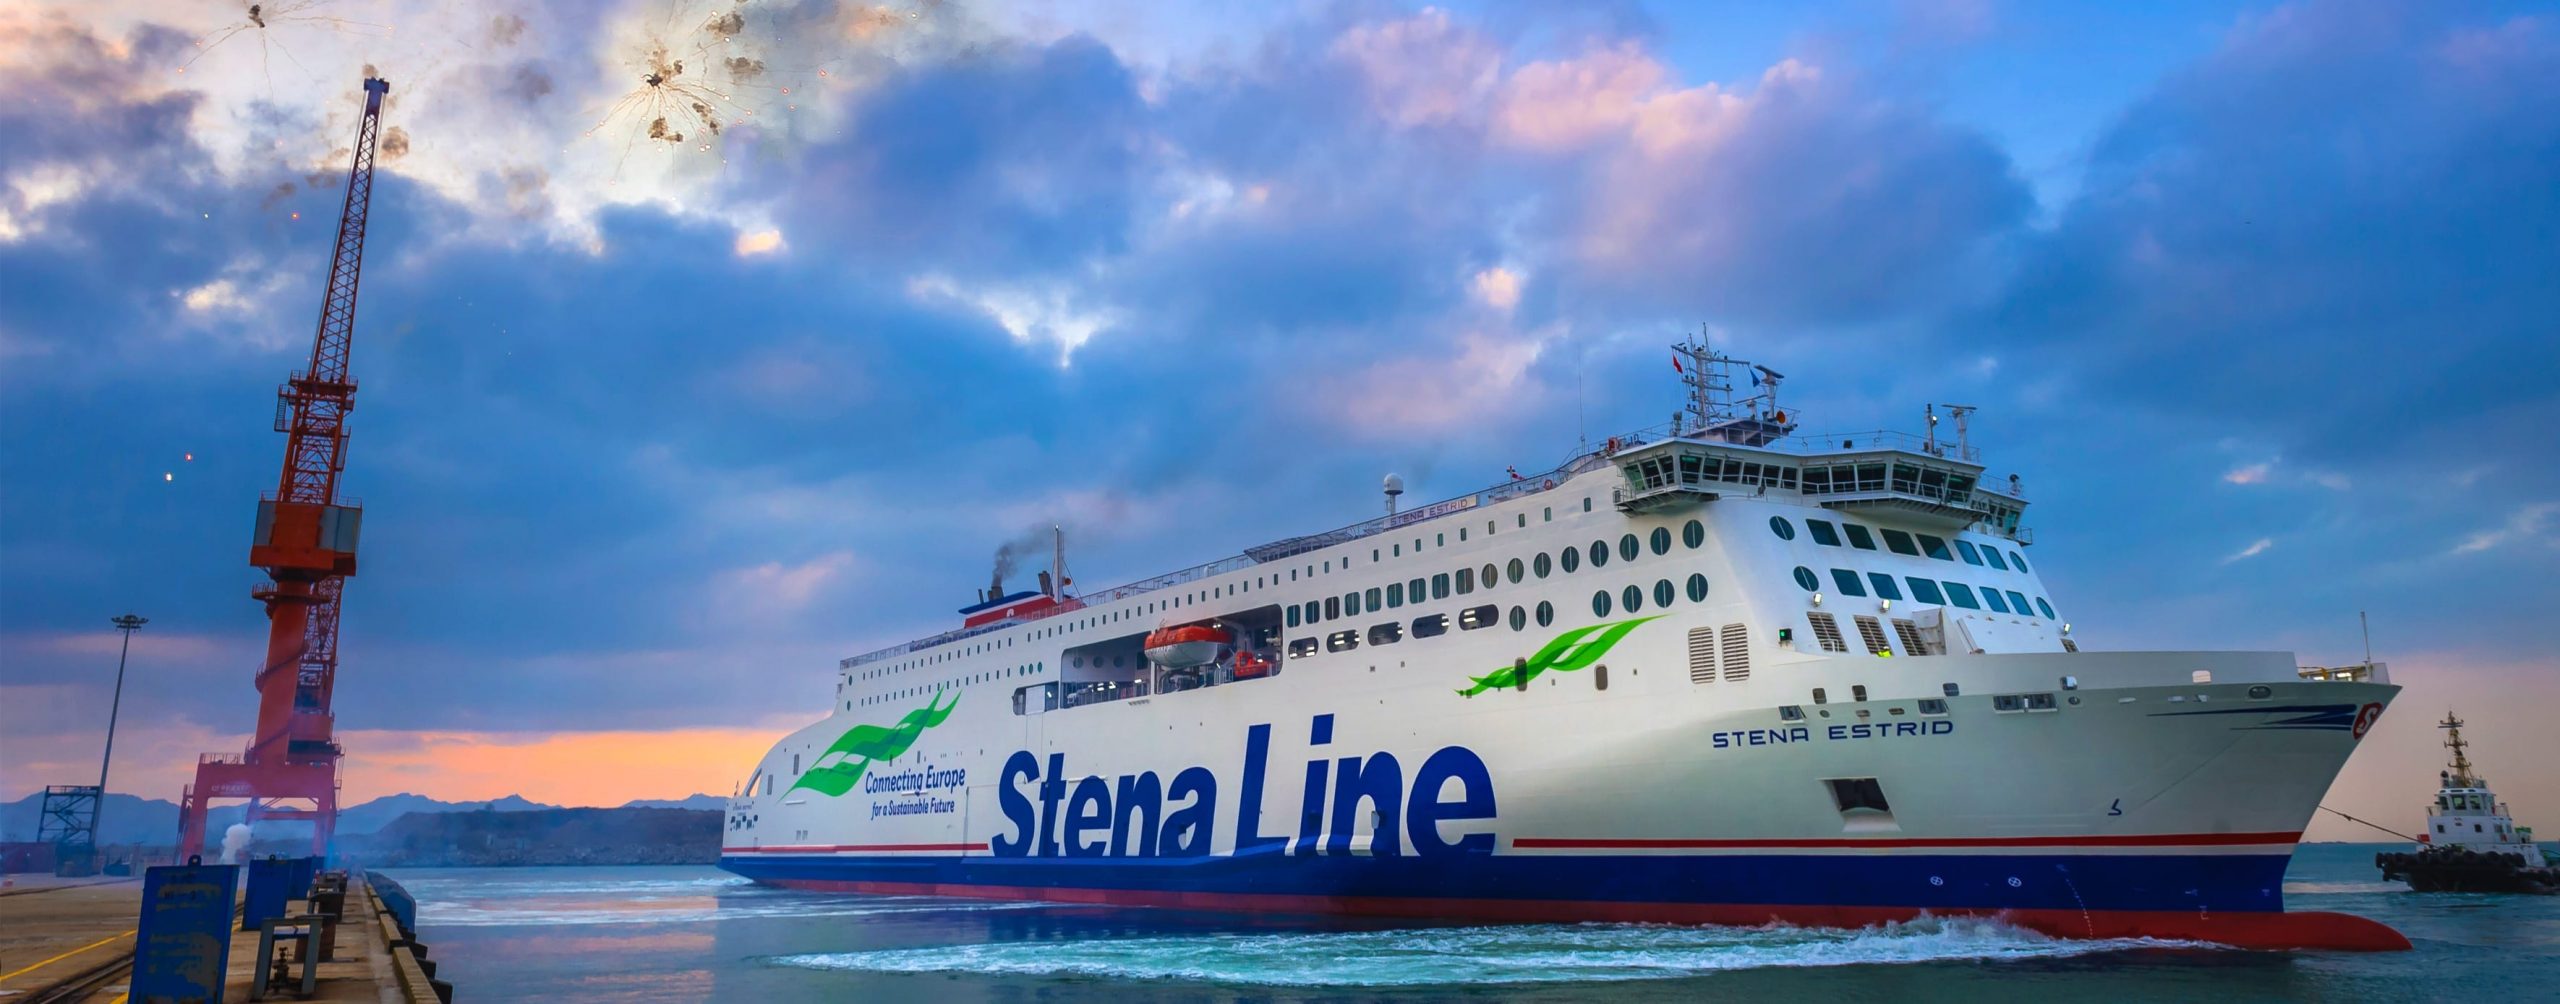 Stena Line, Stena Estrid